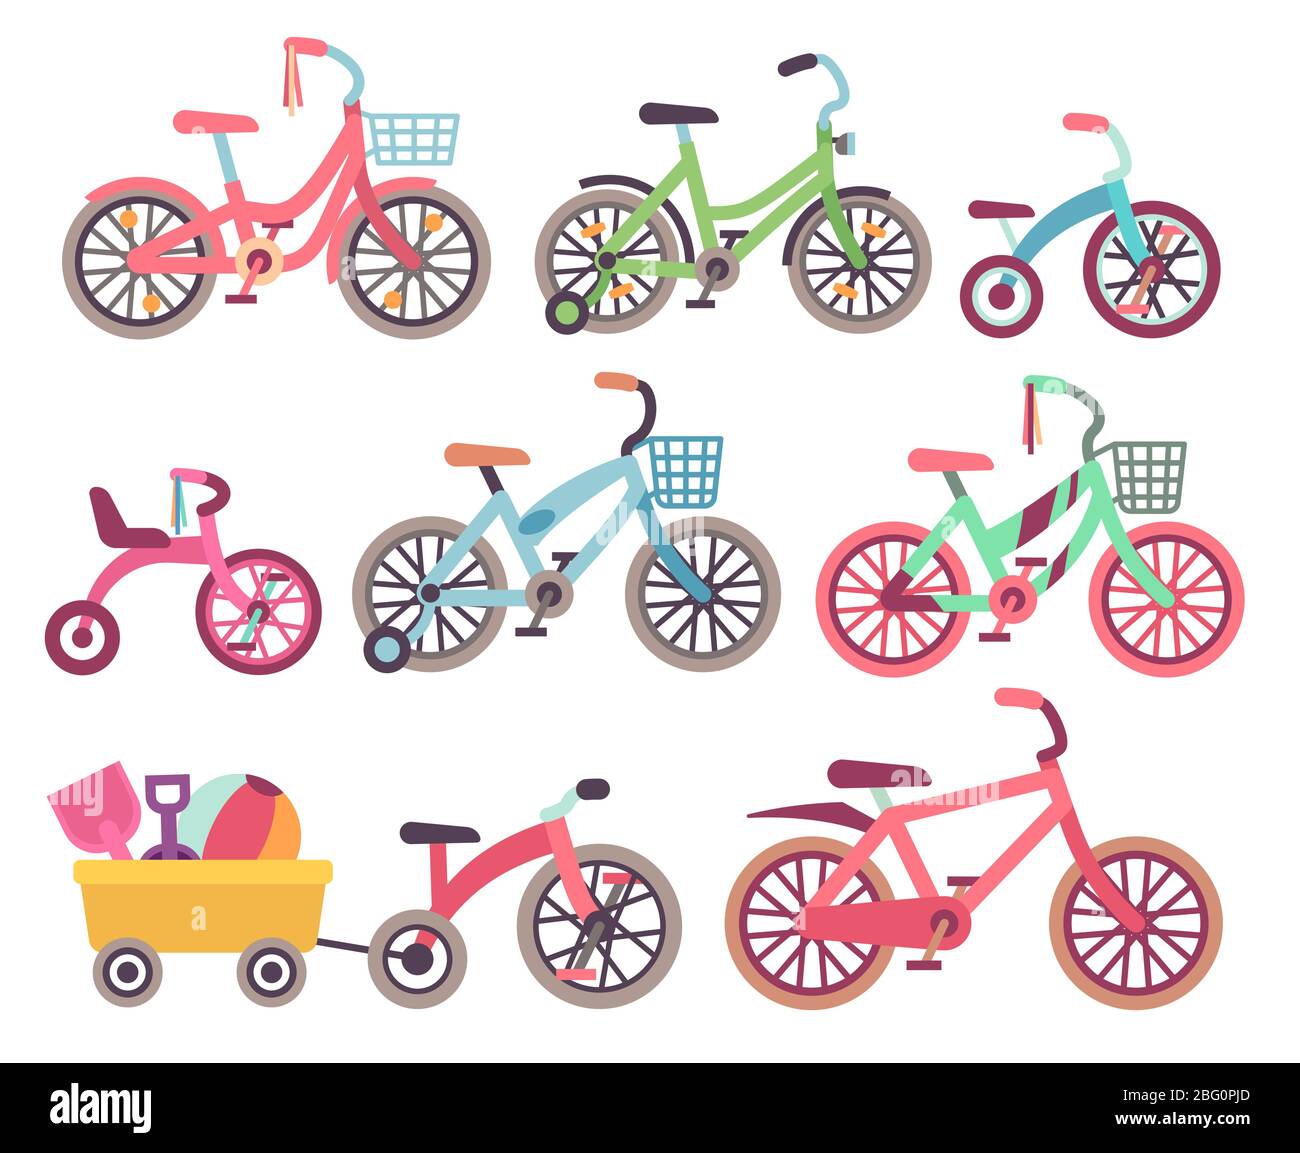 Kids bike Banque d'images vectorielles - Alamy